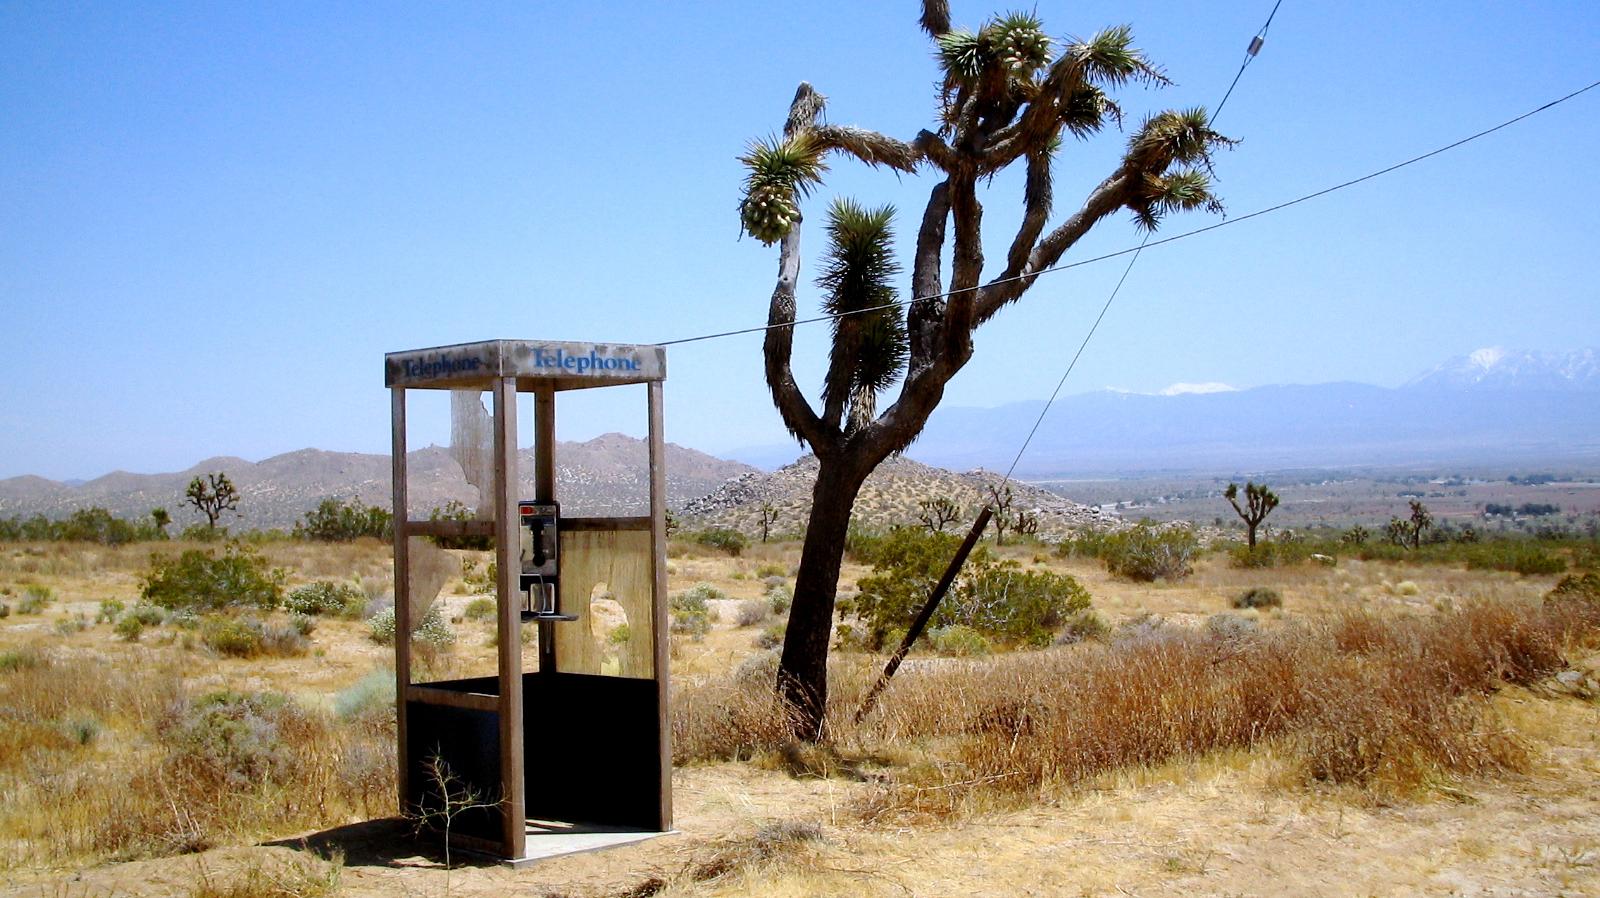 La «&nbsp;Mojave Phone Booth&nbsp;», une cabine téléphonique isolée dans le désert des Mojaves. © Mwf95, CC BY-SA 4.0, via Wikimedia Commons